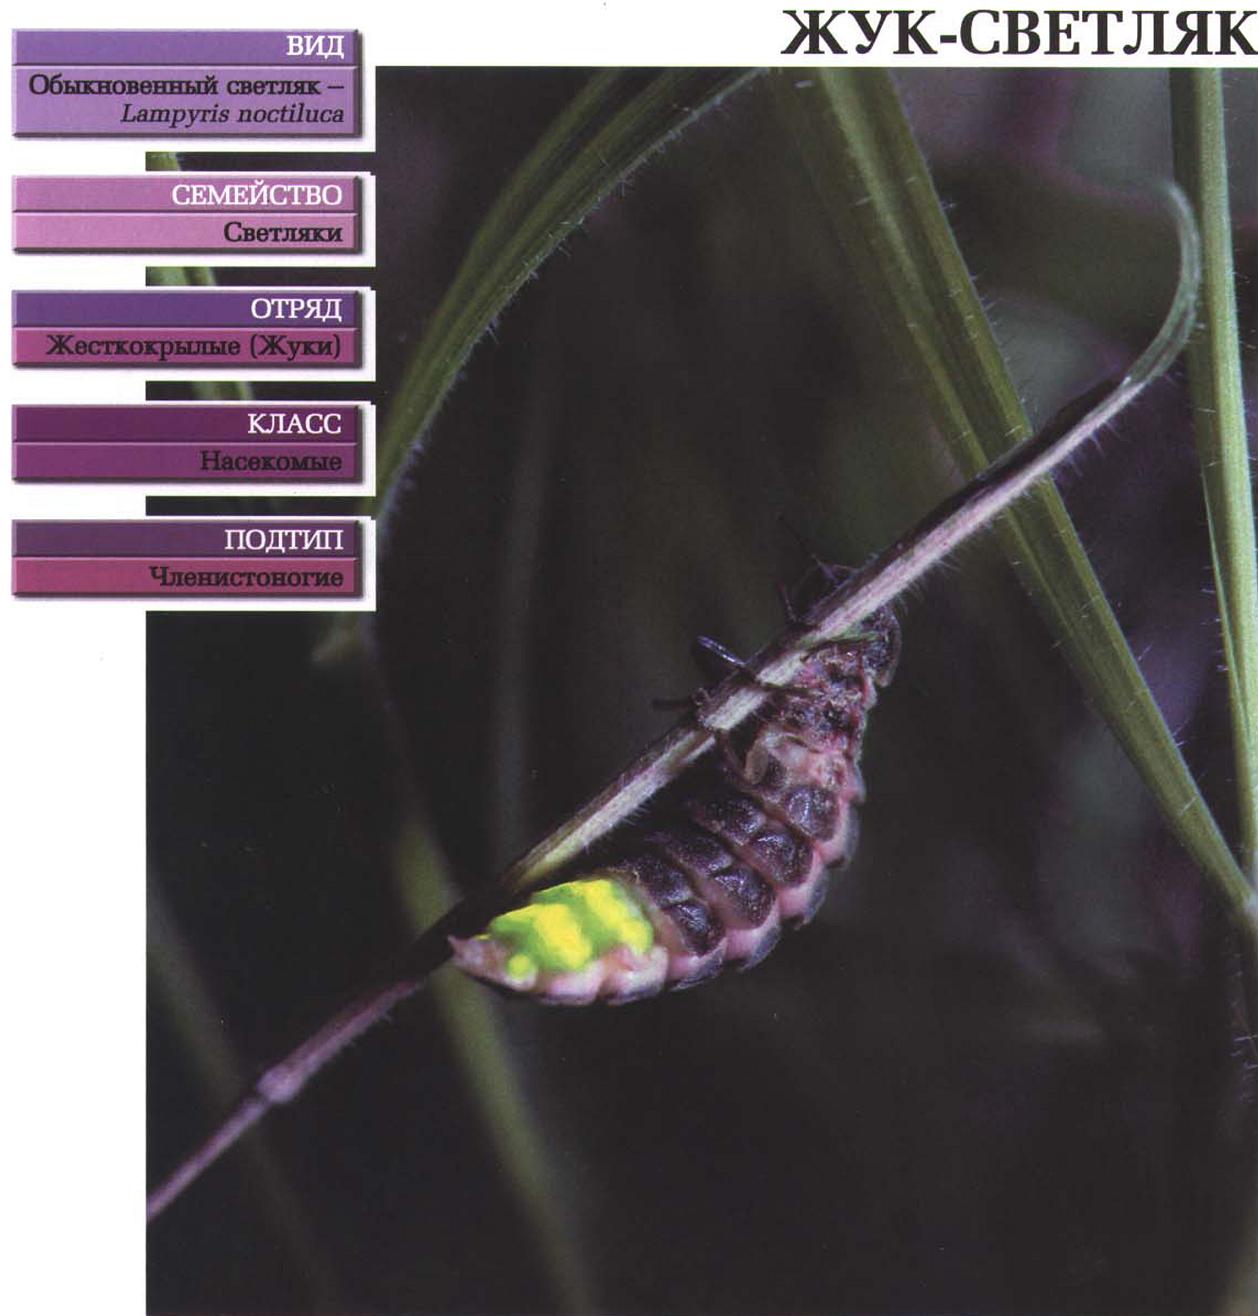 Систематика (научная классификация) жука-светляка. Lampyris noctiluca.